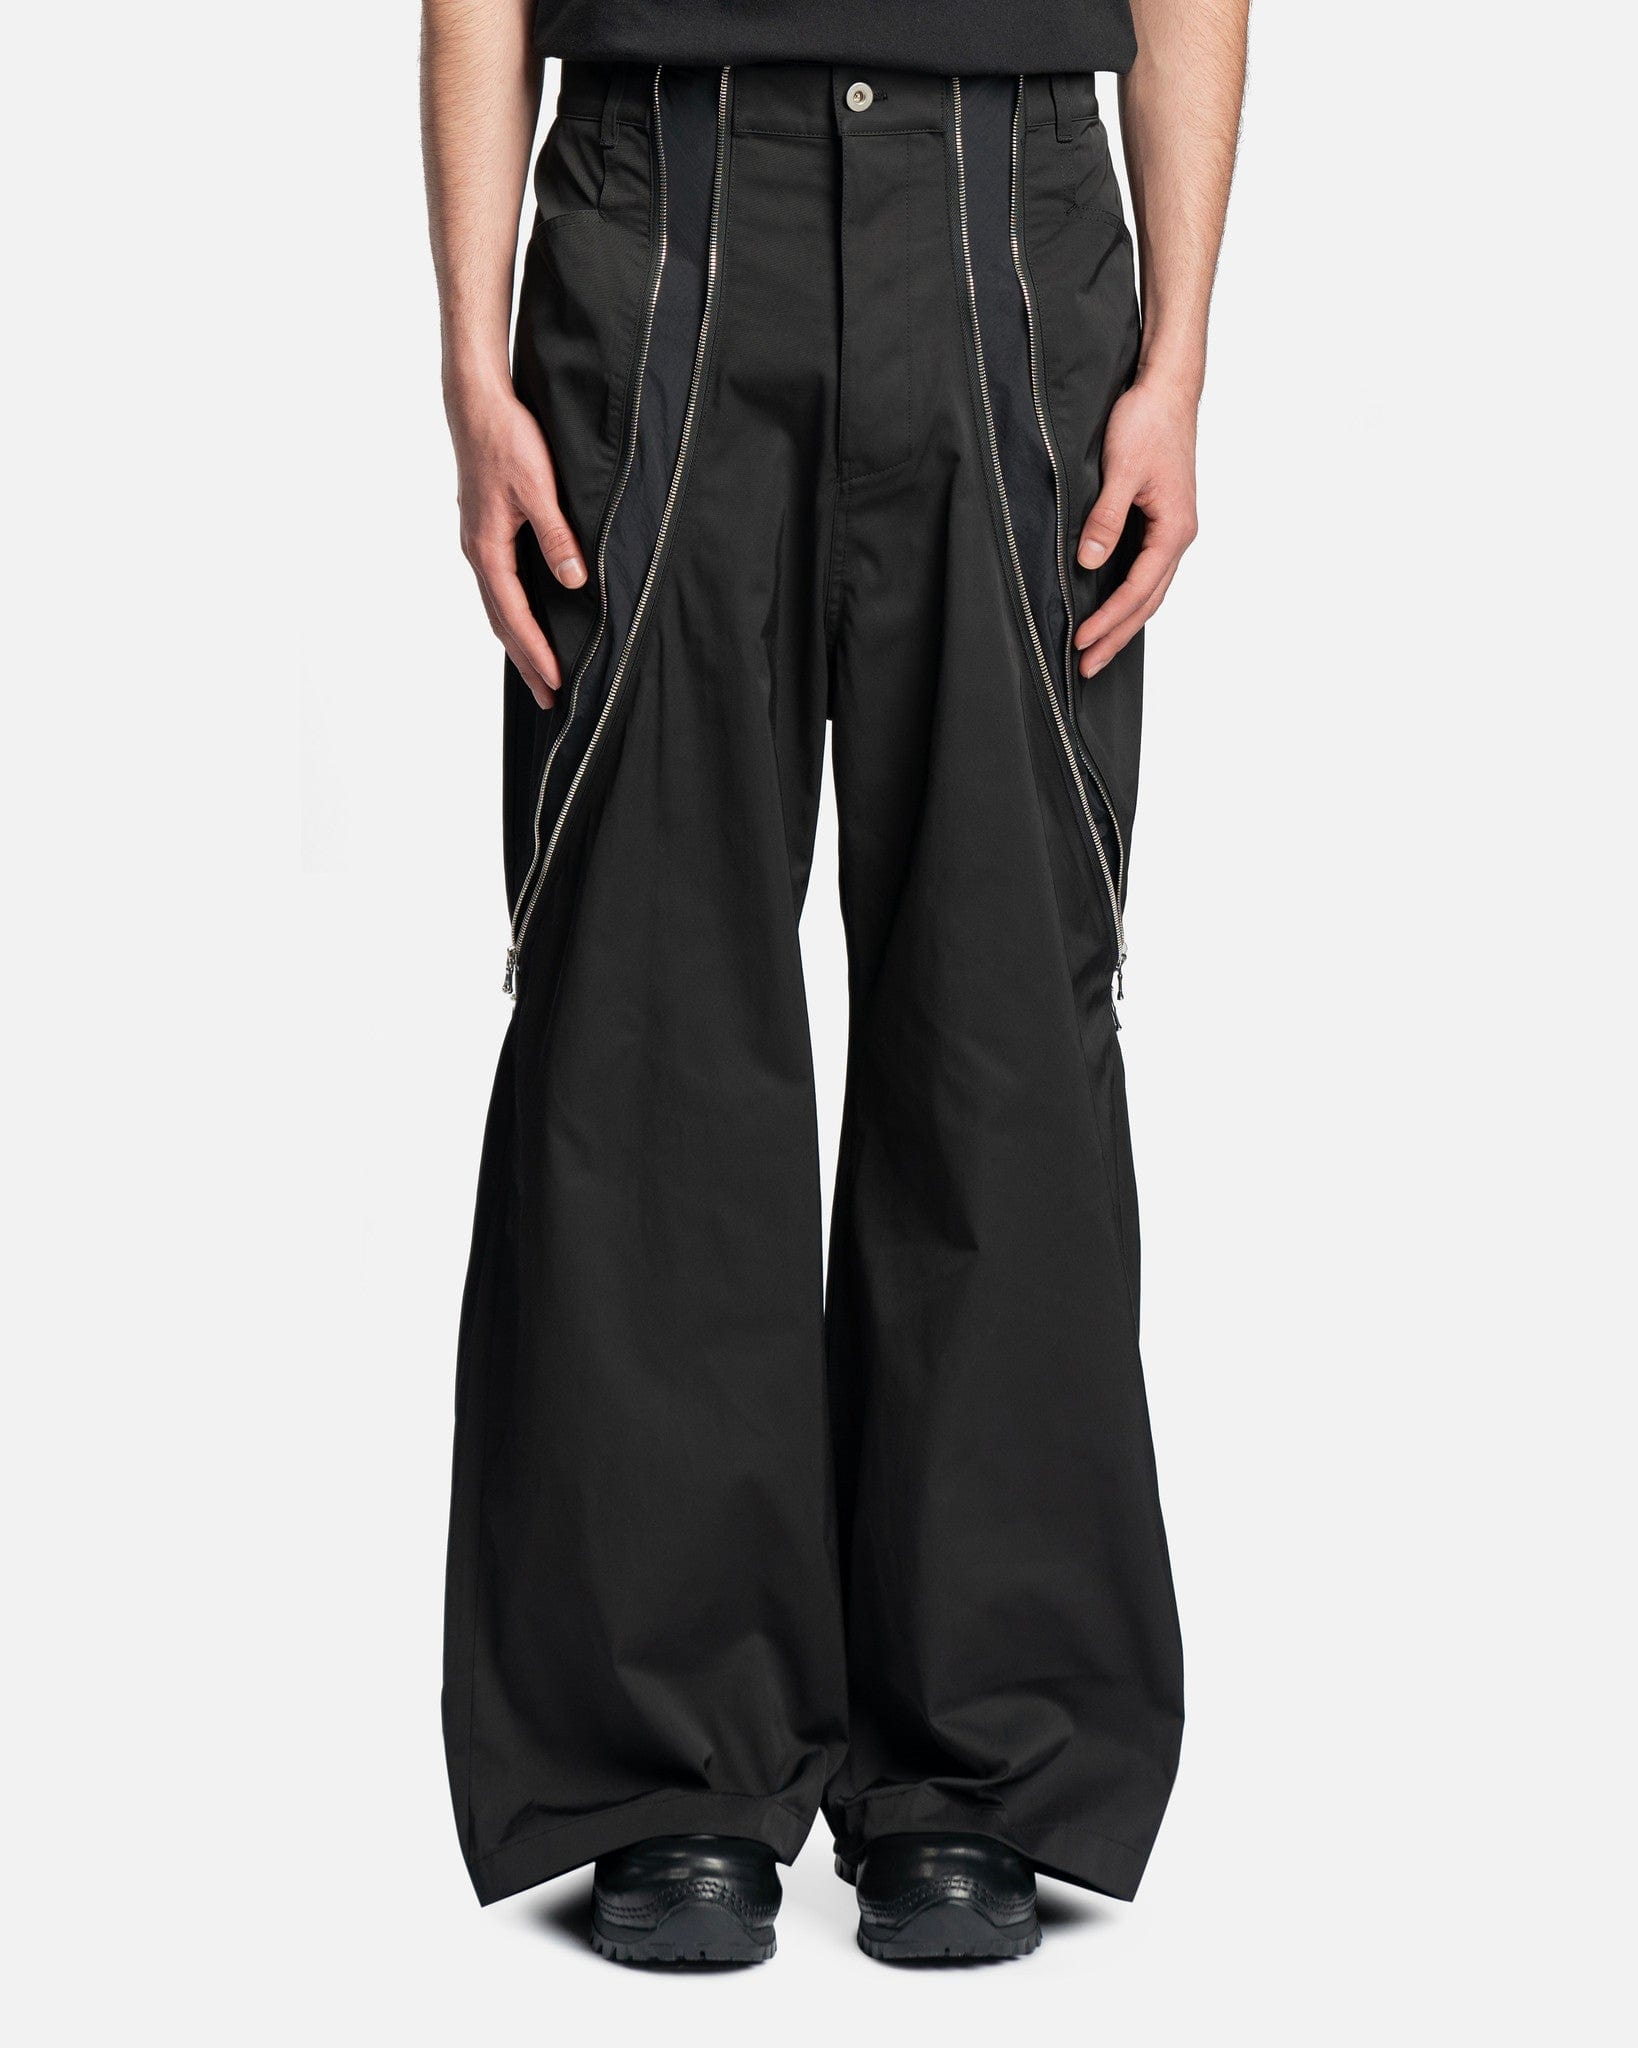 FFFPOSTALSERVICE トリプルエフポスタルサービス zip pants trousers ジップパンツ トラウザーズ グリーン685センチ裾幅